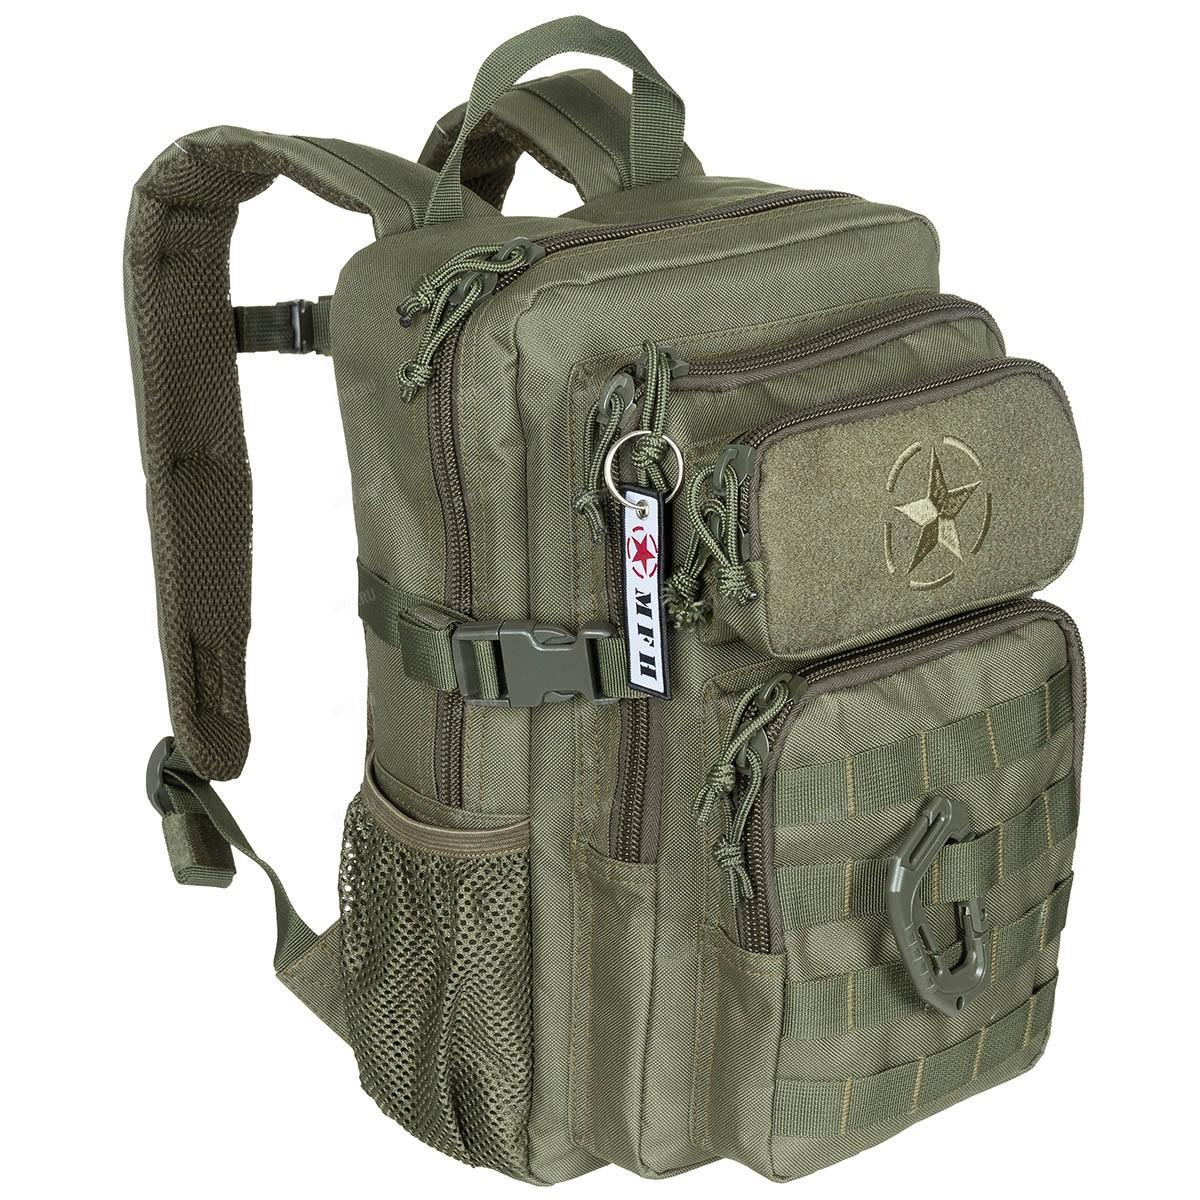 Тактический компактный рюкзак Youngster (15 литров), цвет OD green купить в интернет-магазине wht.ru